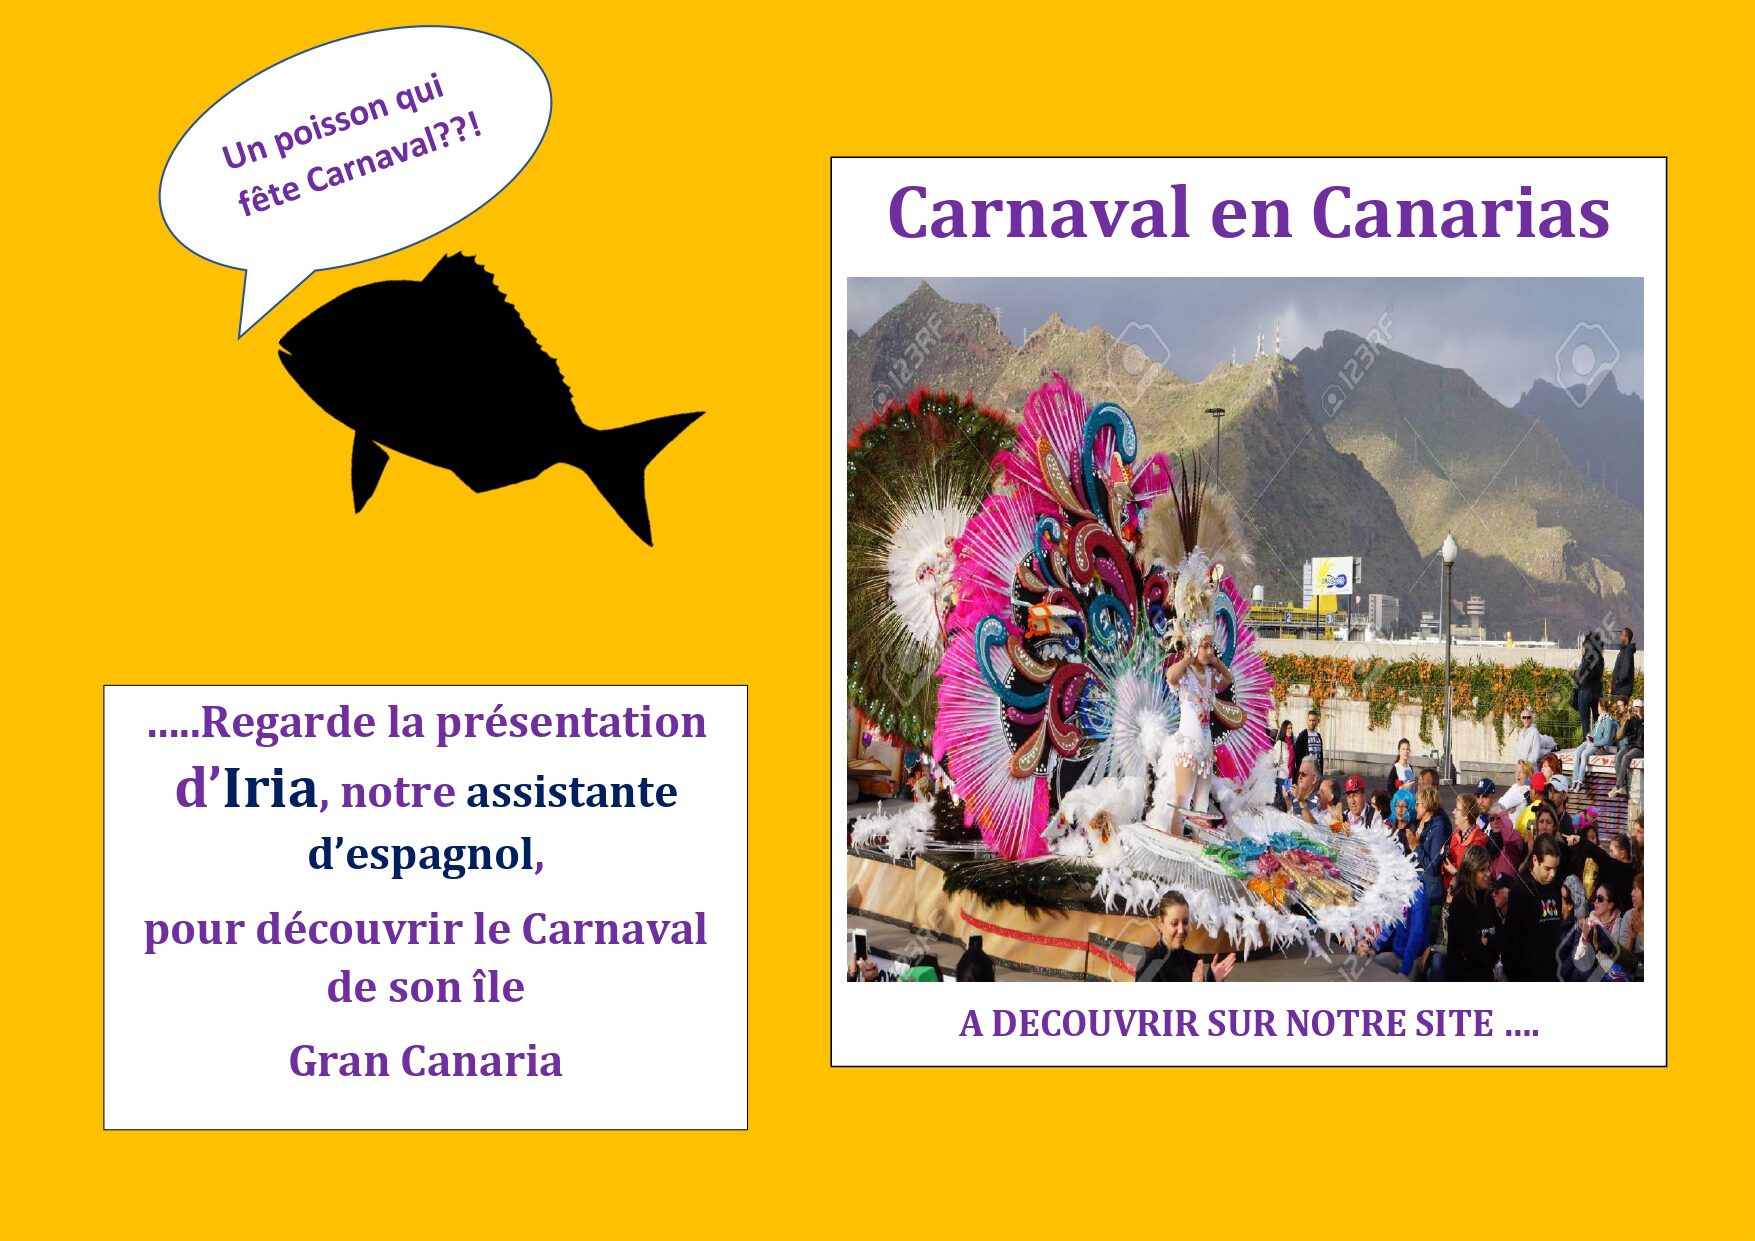 CARNAVAL DE GRAN CANARIA_page-0001.jpg